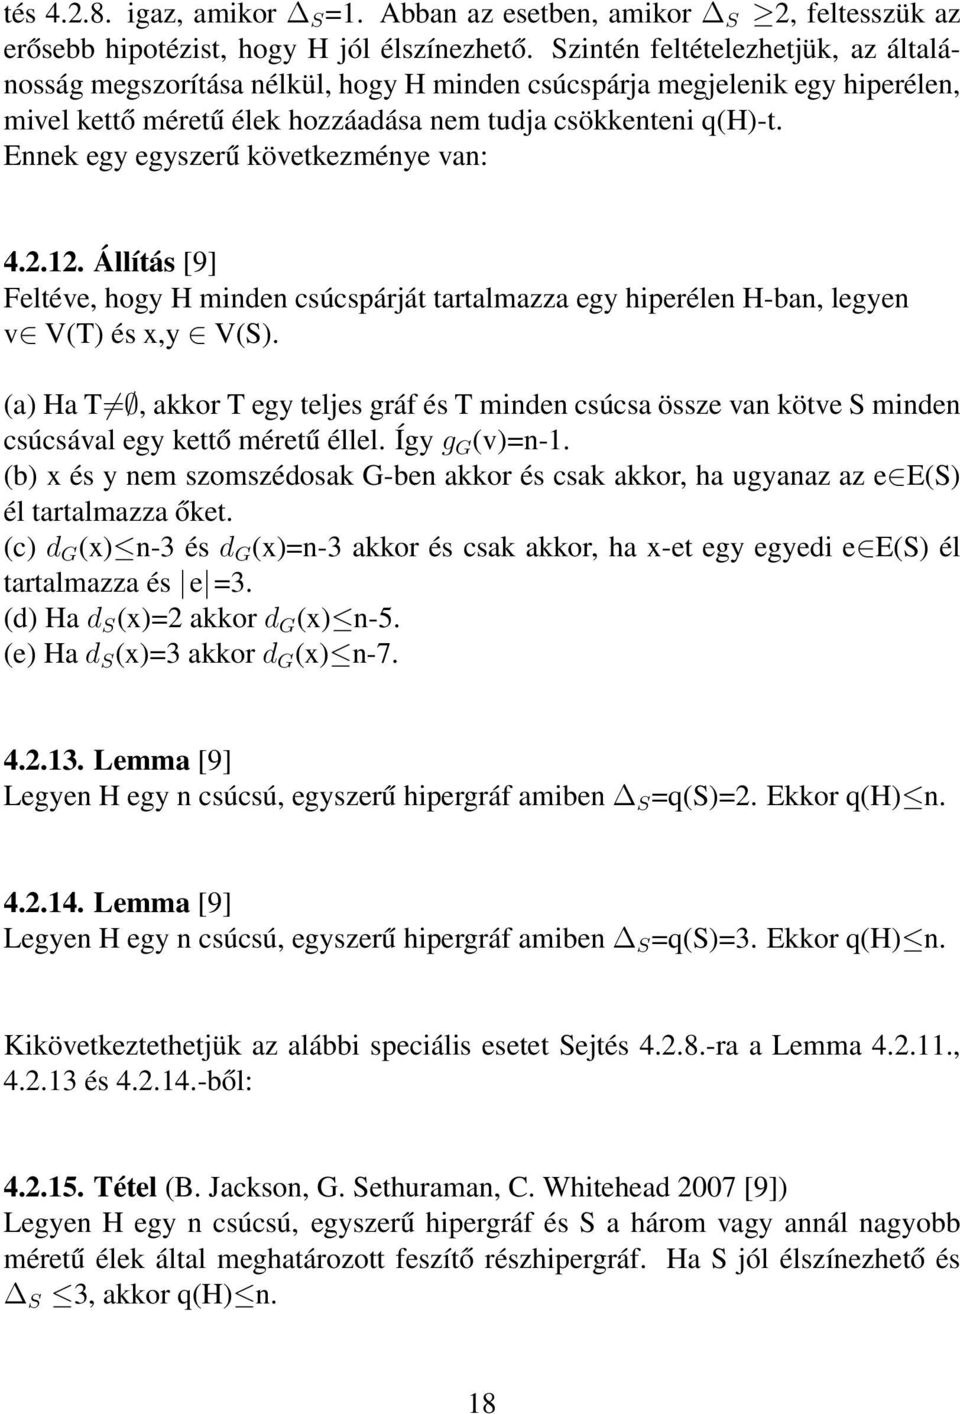 Ennek egy egyszerű következménye van: 4.2.12. Állítás [9] Feltéve, hogy H minden csúcspárját tartalmazza egy hiperélen H-ban, legyen v V(T) és x,y V(S).